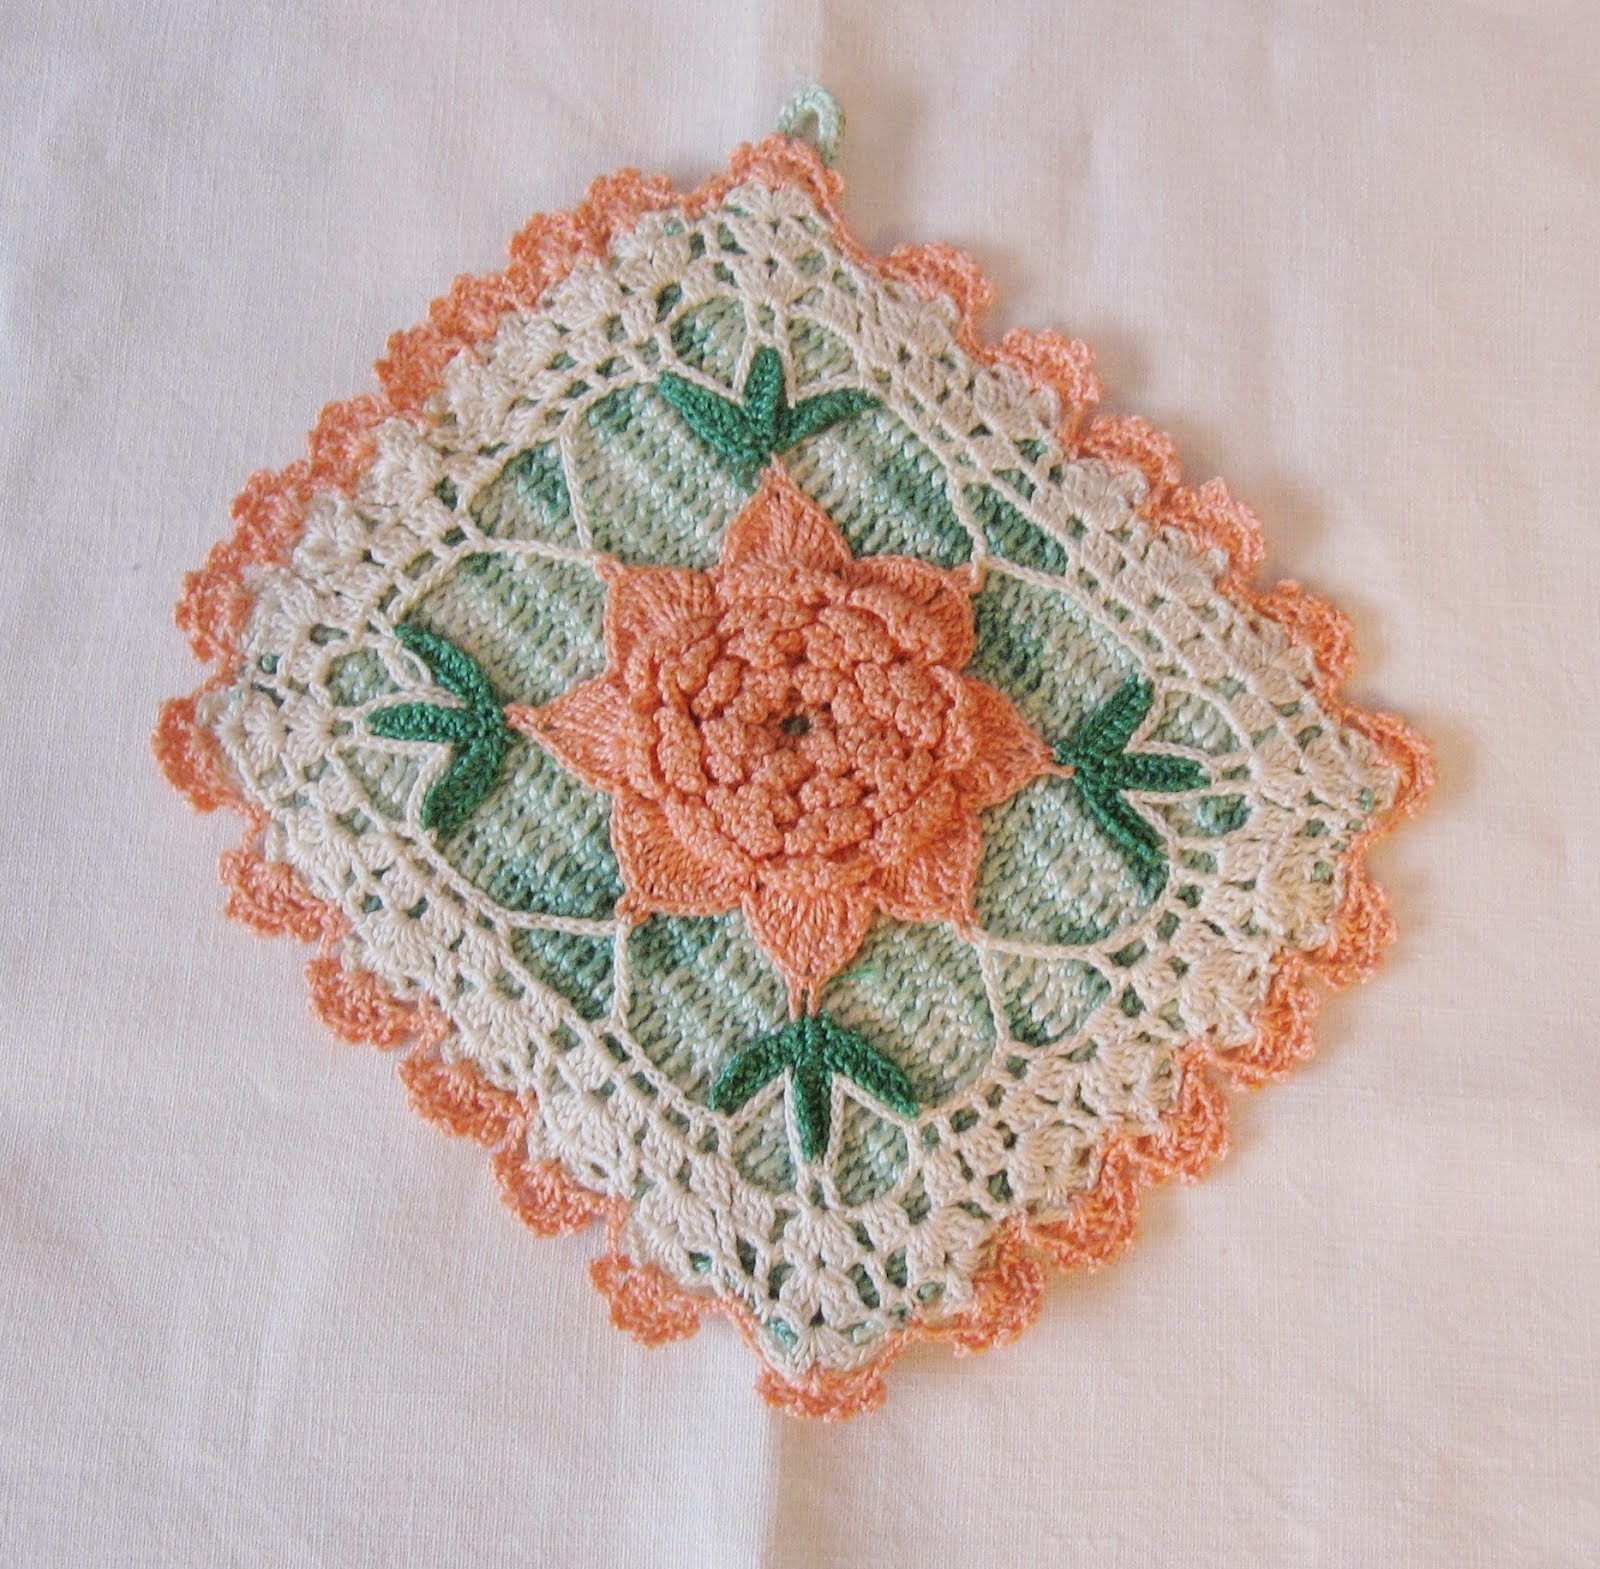 The Art of a Crochet Potholder